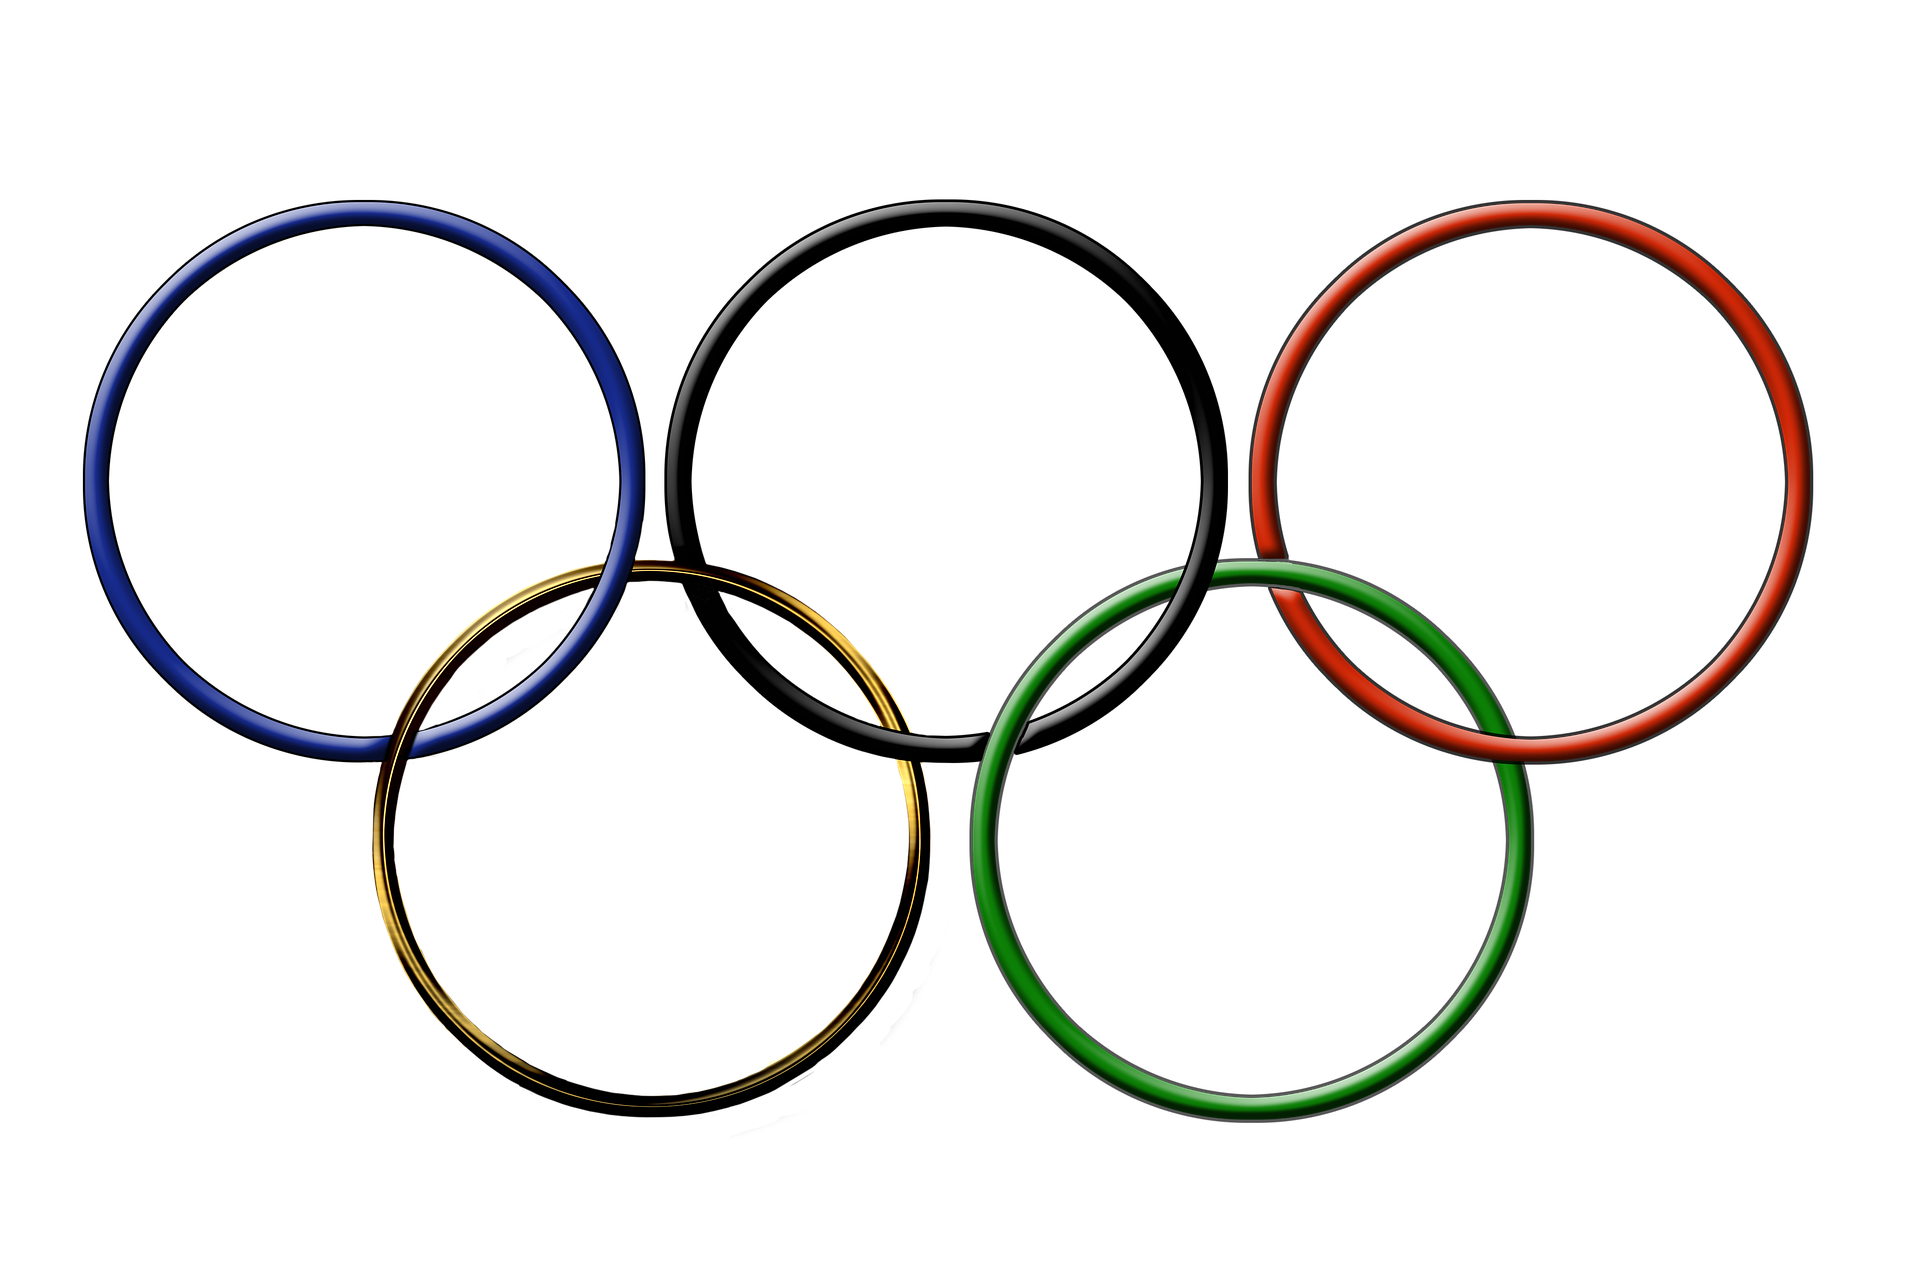 Как зародились Олимпийские игры 9